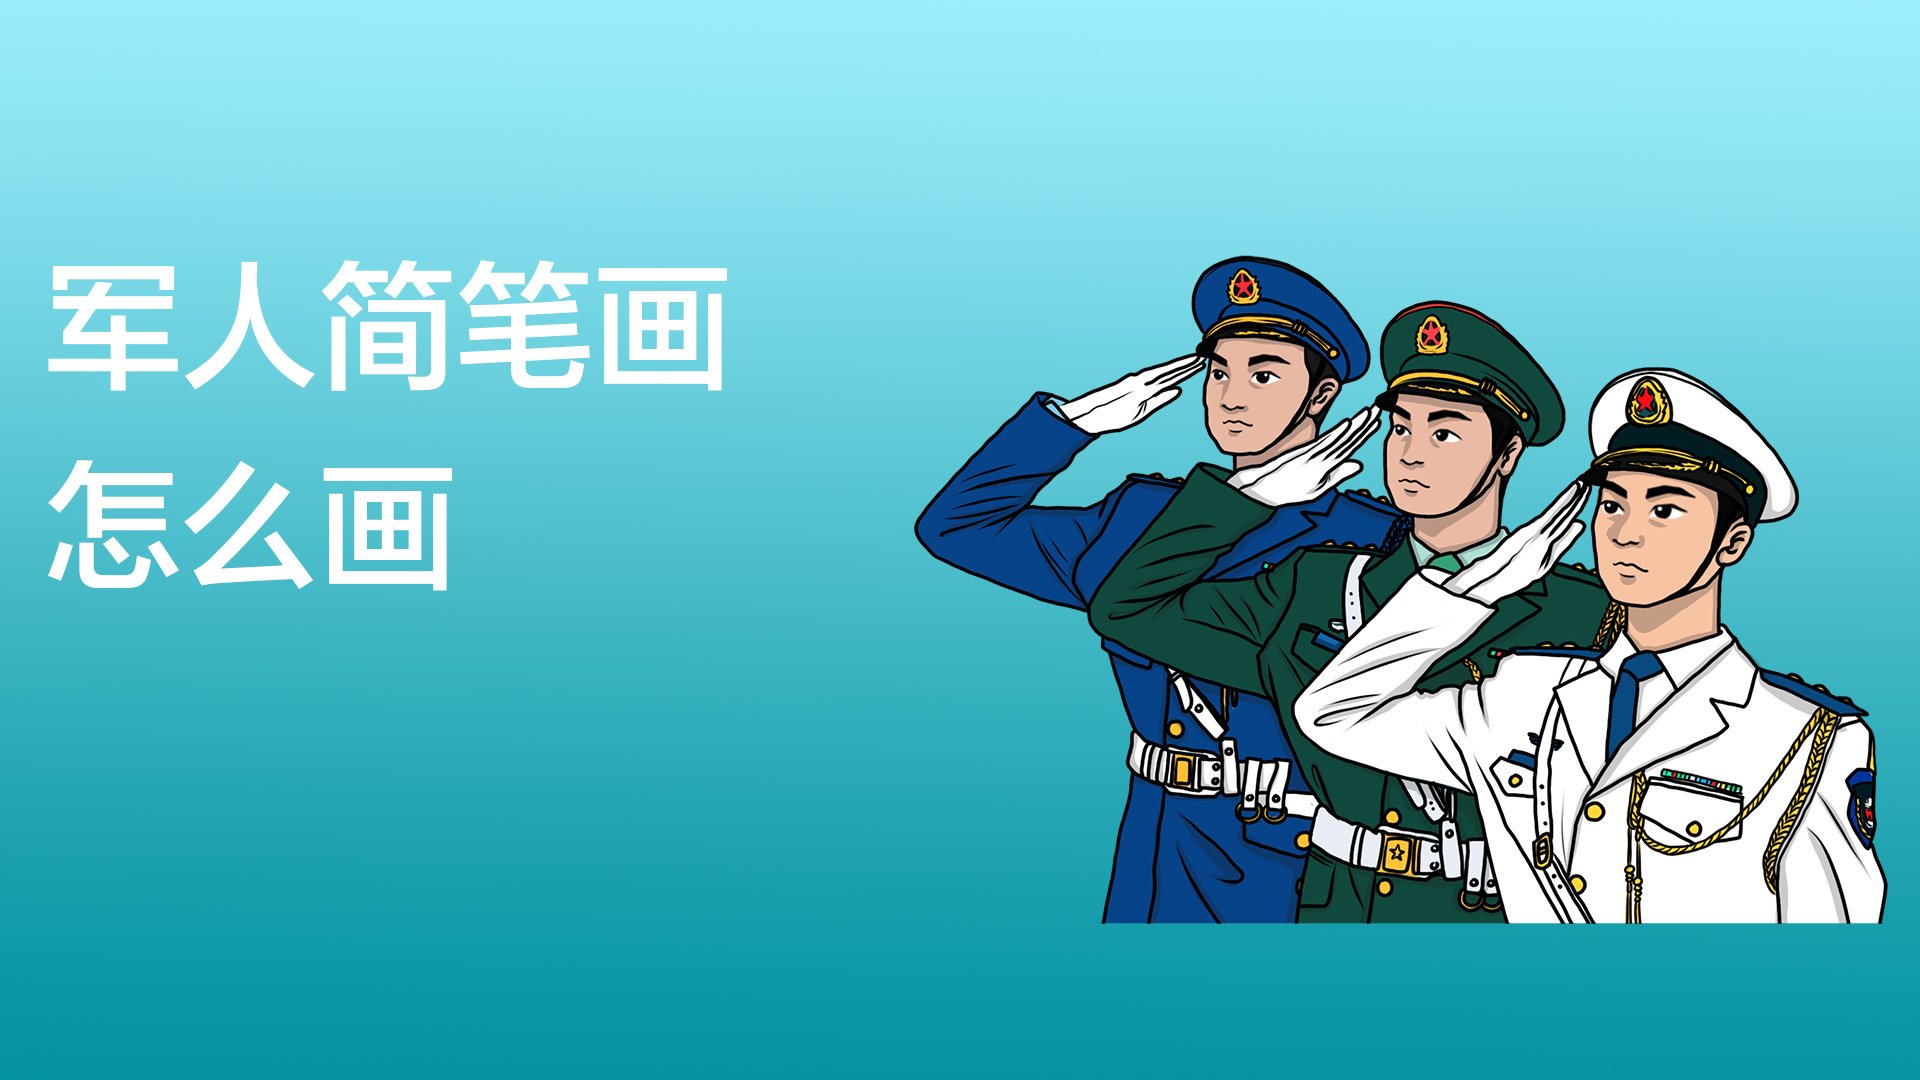 中国士兵怎么画 简单图片